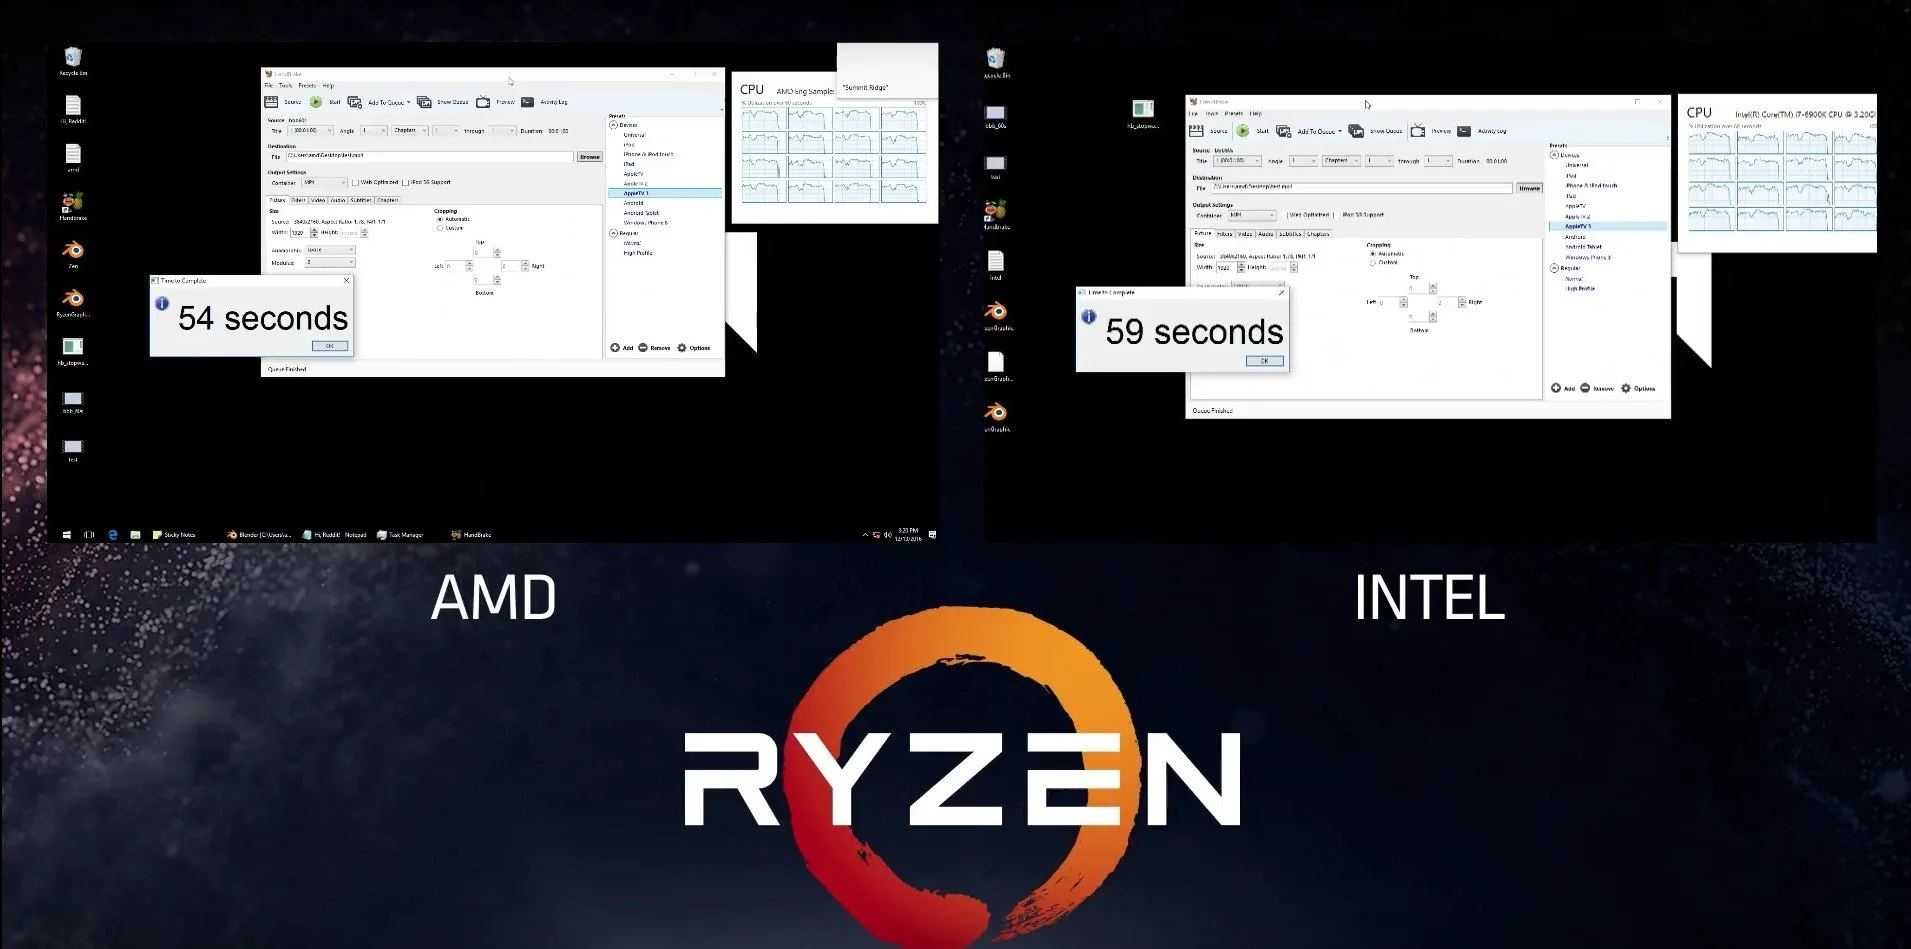 AMD сравнила производительность процессоров Ryzen с Intel Core i7 - фото 2